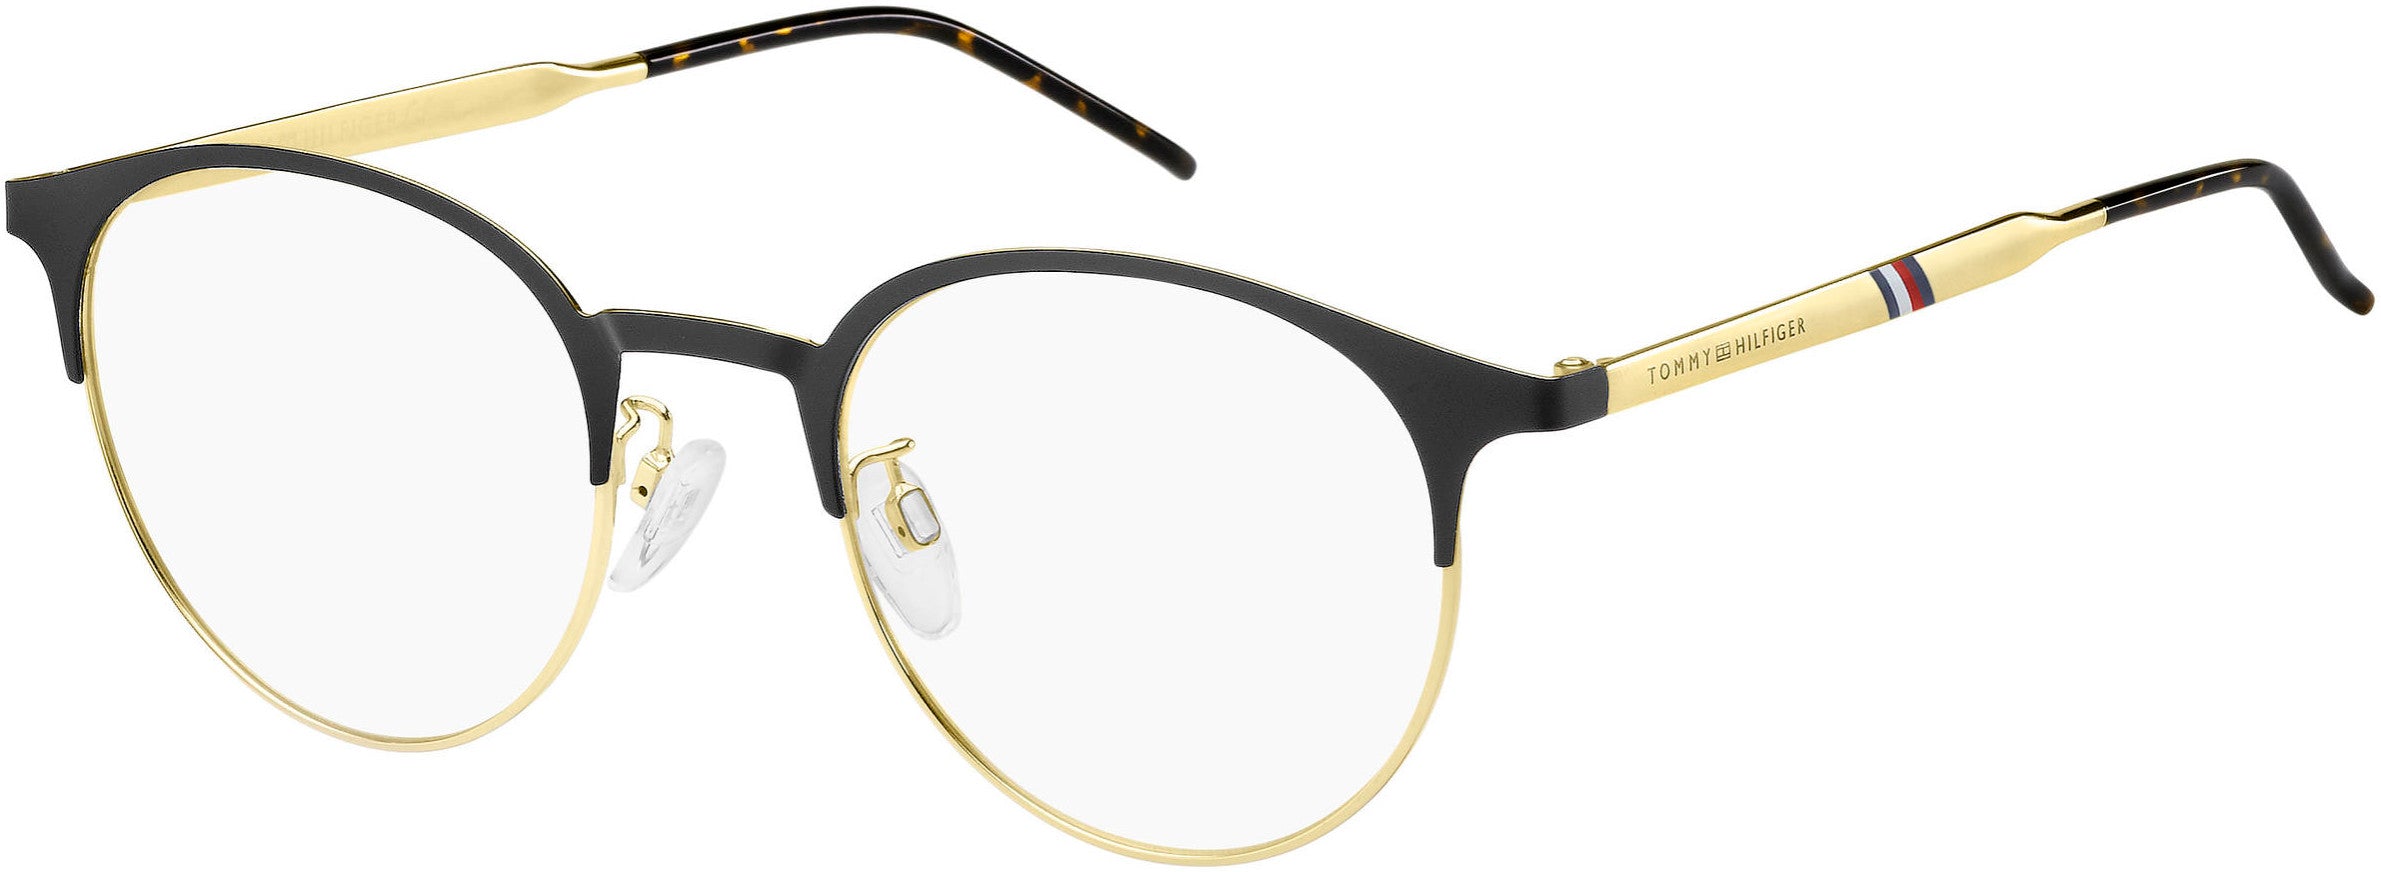 Tommy Hilfiger T. Hilfiger 1622/G Oval Modified Eyeglasses 0I46-0I46  Black Gold (00 Demo Lens)